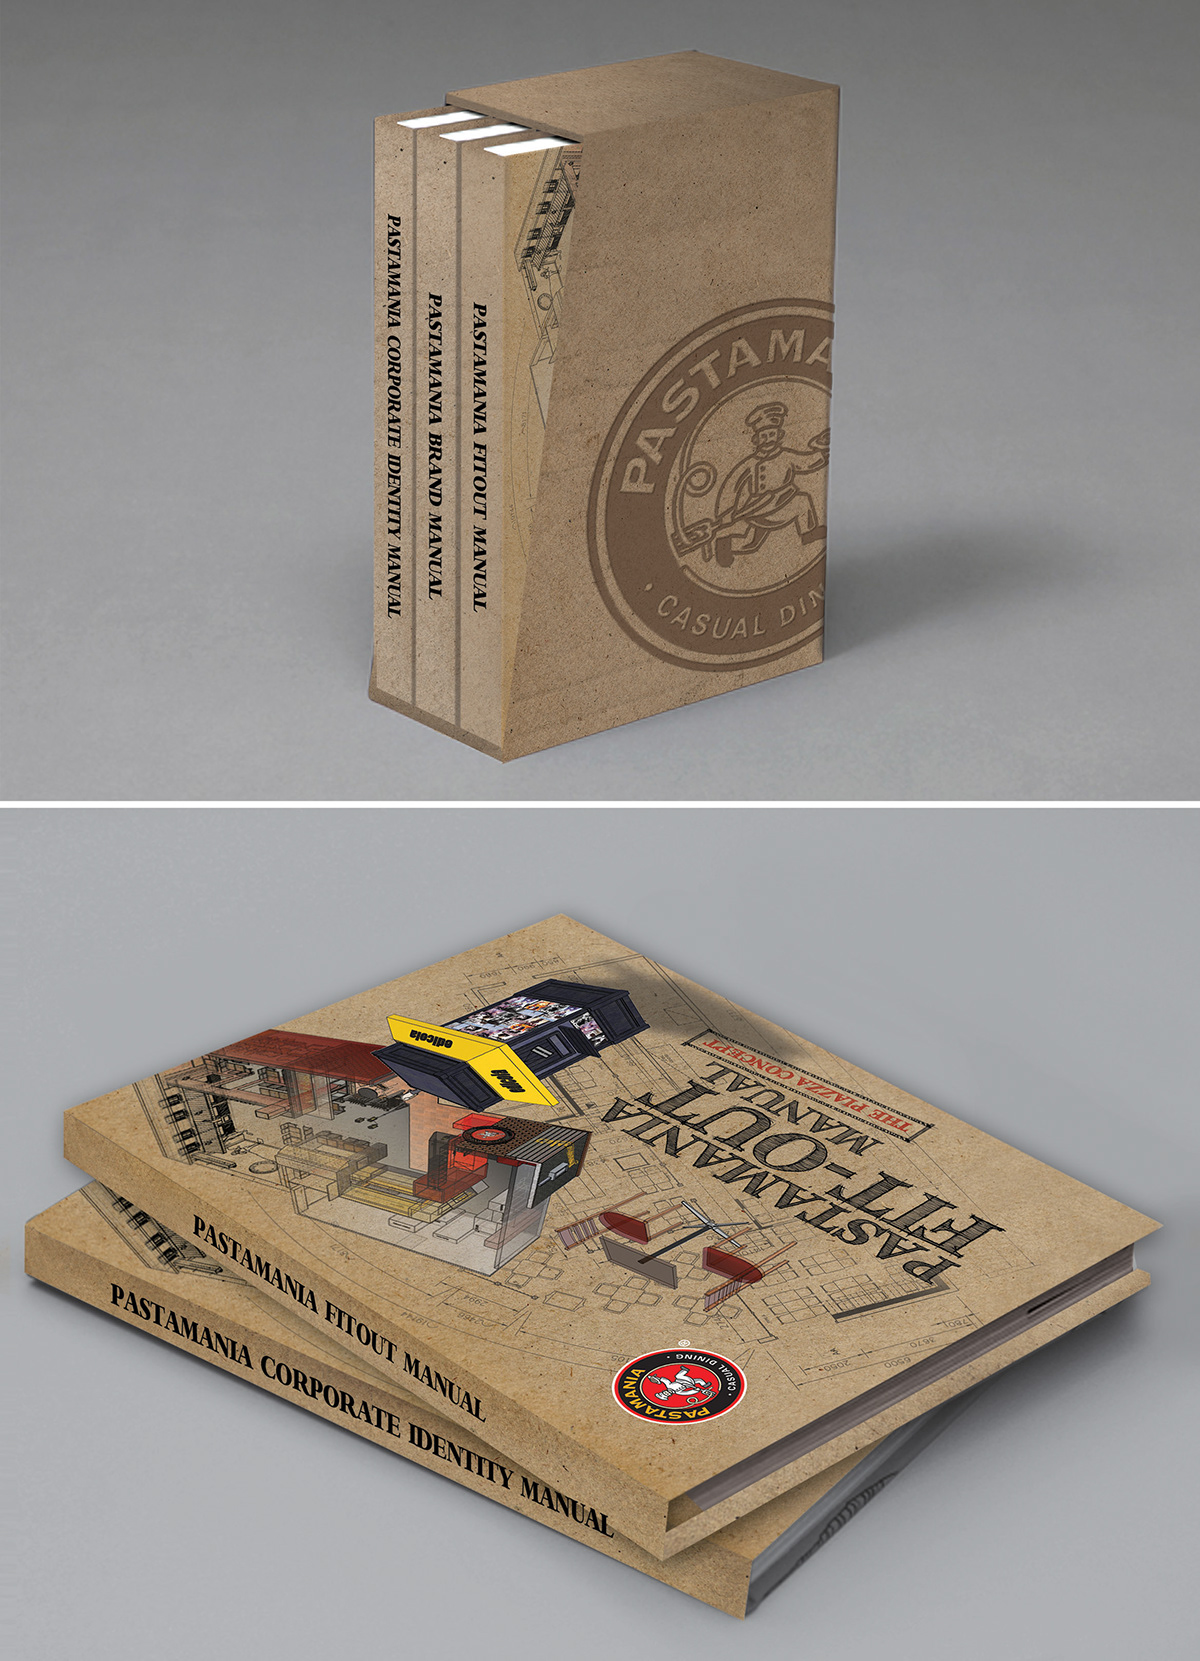 packagings handbooks advertisements posters Corporate Identity brandings